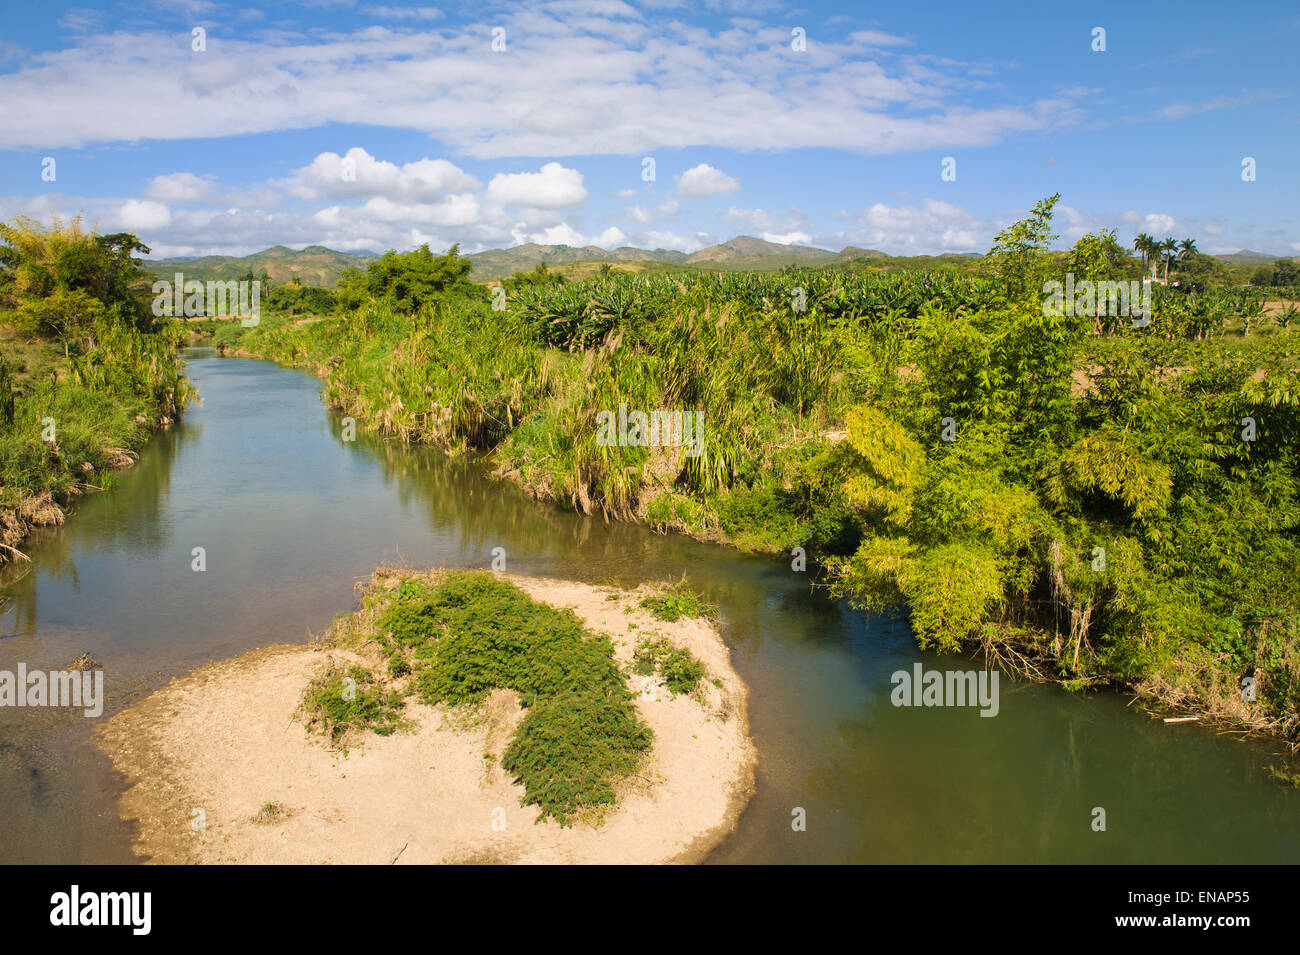 Landscape of the Valle de los Ingenios, Valley of the sugar refineries, Trinidad, Sancti Spiritus Province, Cuba Stock Photo